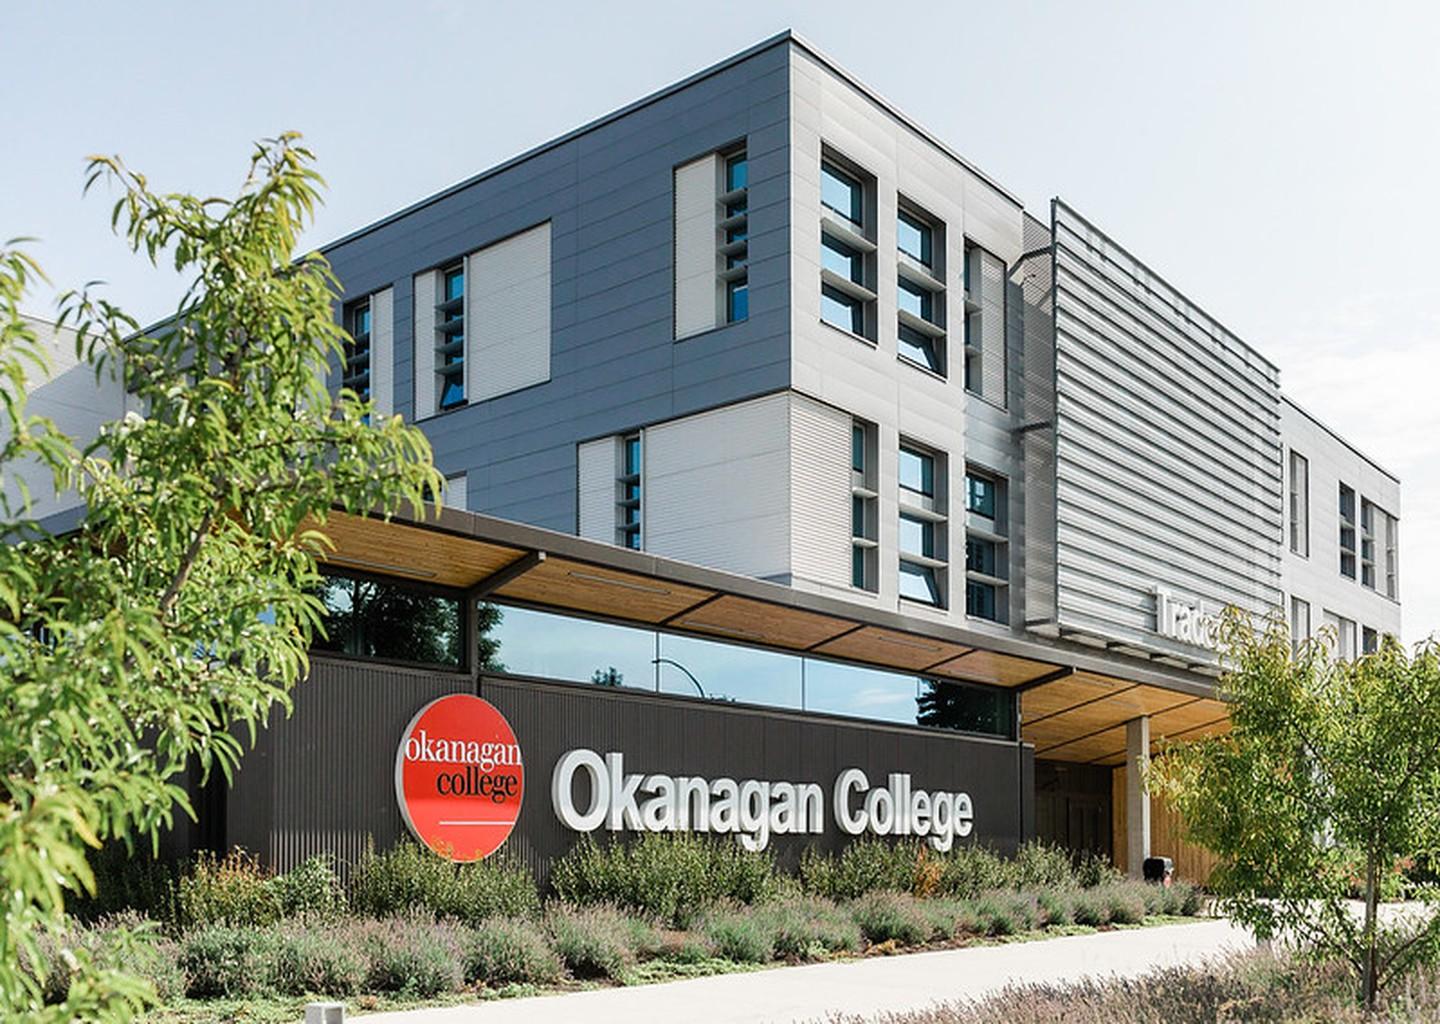 At Okanagan College